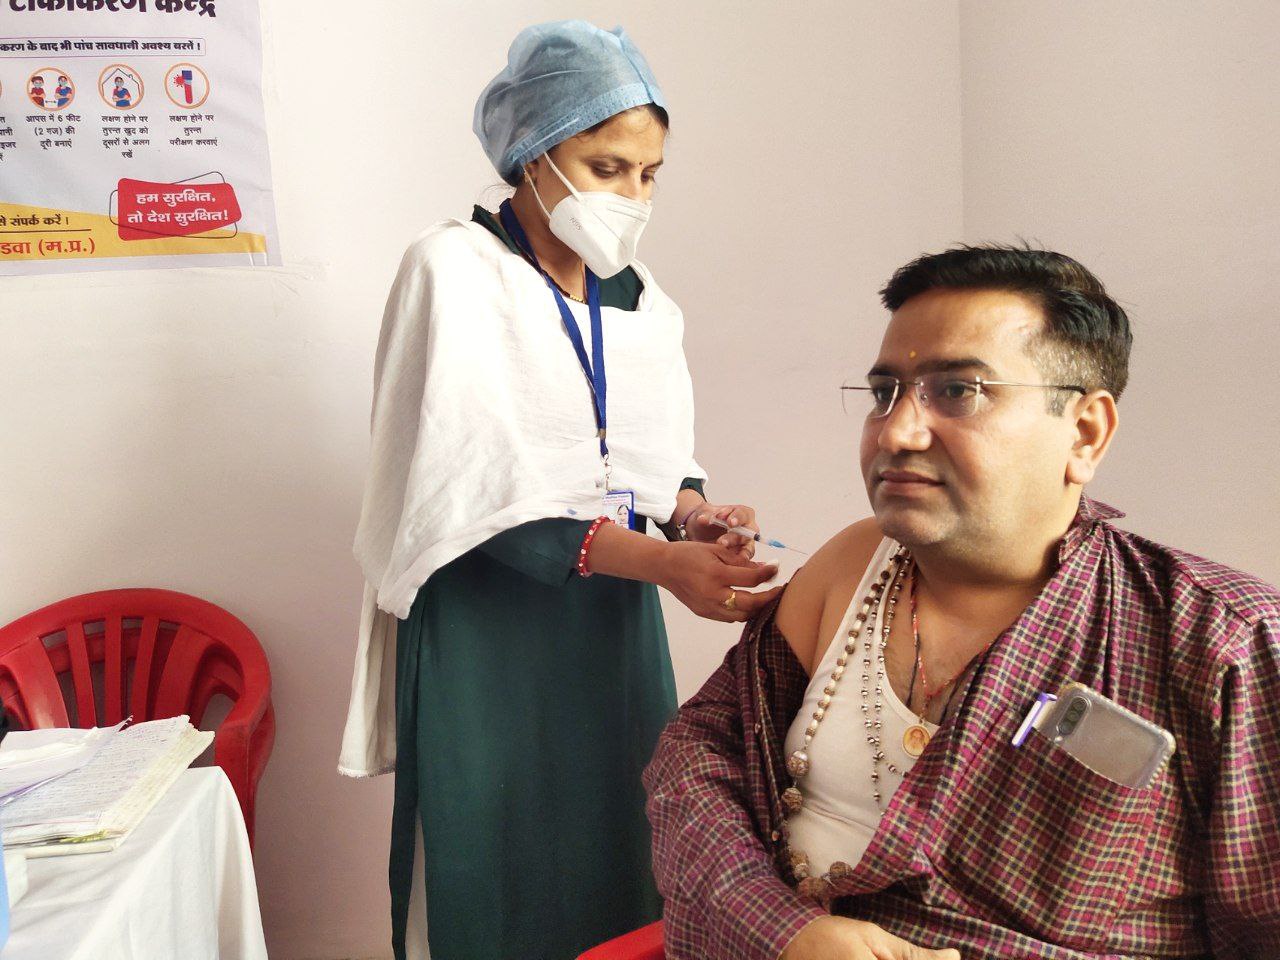 कोविड-19 का टीका लगाने में स्वास्थ्य कार्यकर्ता नहीं दिखा रहे रुचि